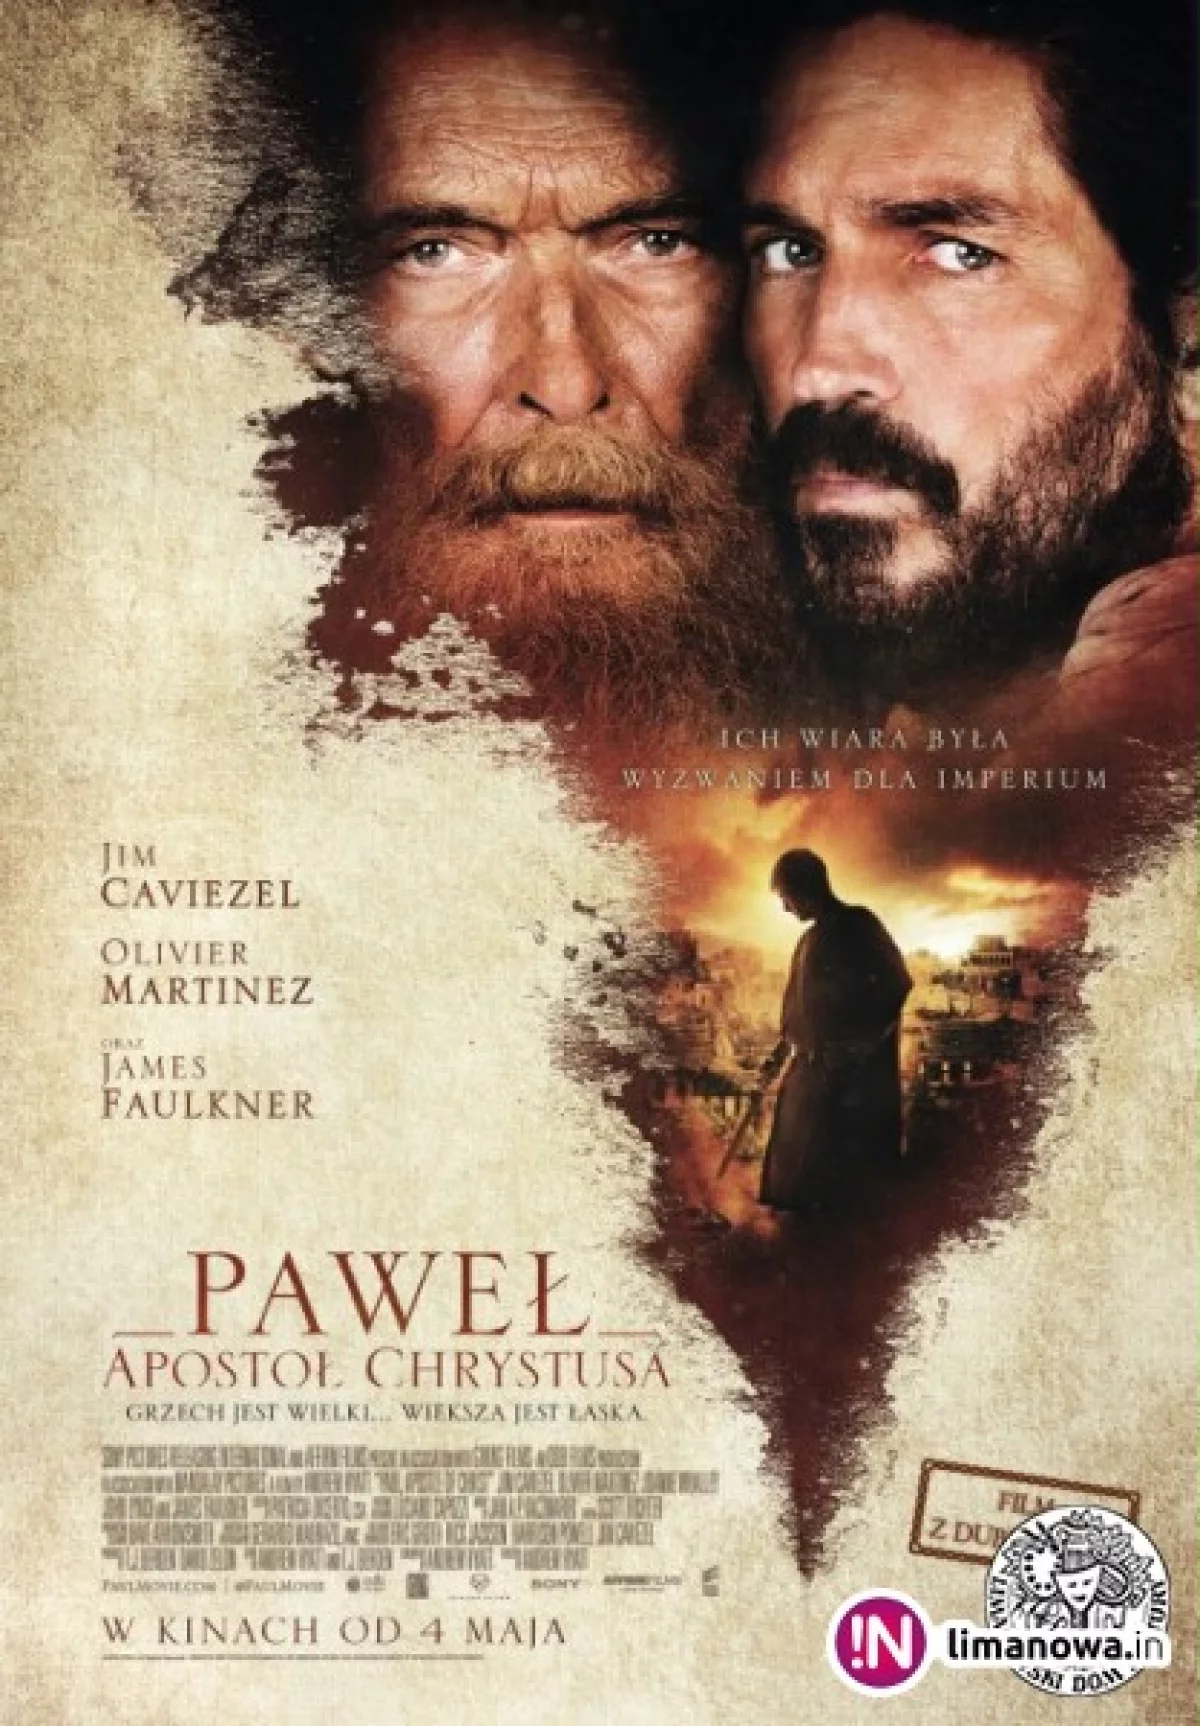 Premiera w kinie Klaps - „Paweł, apostoł Chrystusa” na ekranie od 4 maja